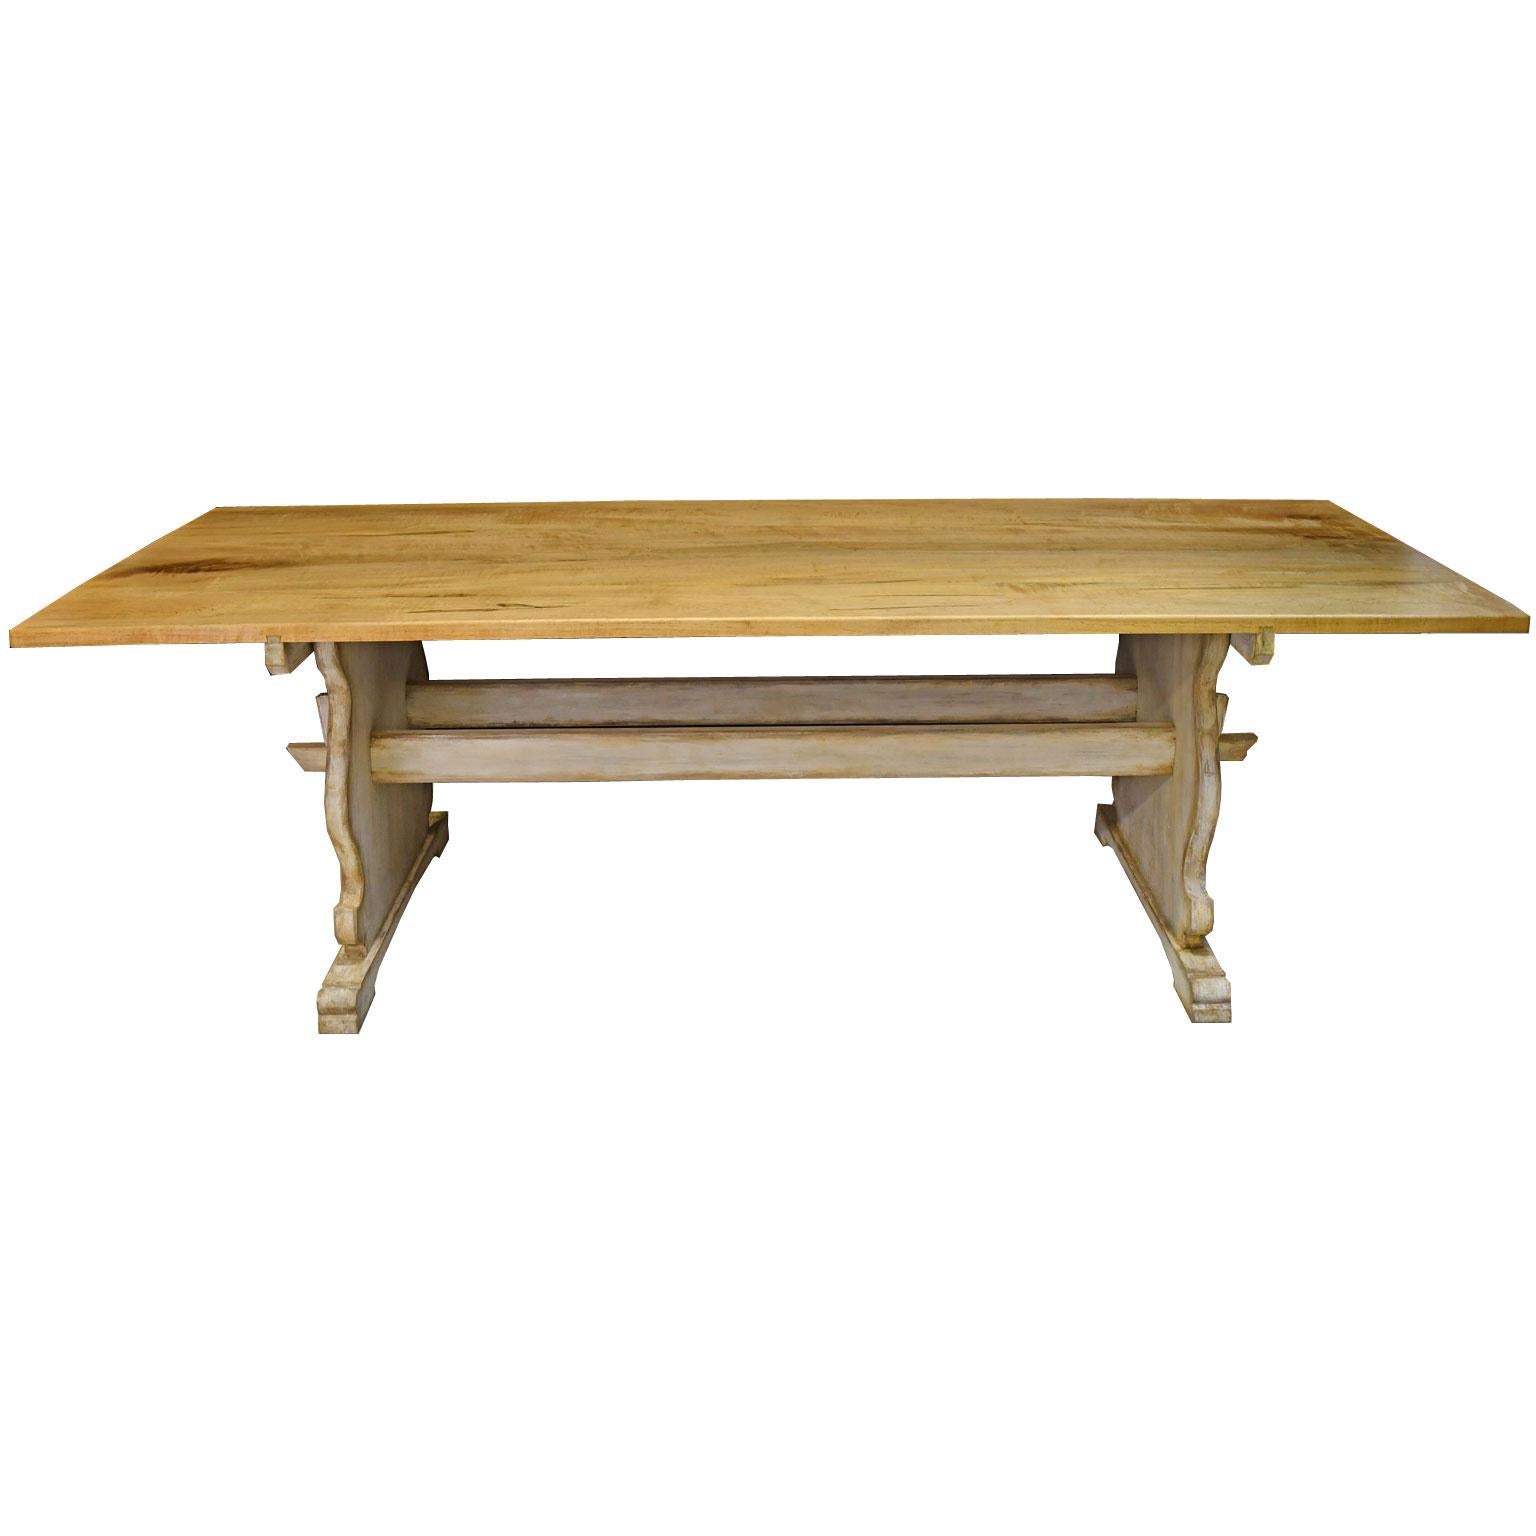 Inspirée d'une table suédo-gustavienne du 18e siècle qui se trouve dans notre inventaire, cette très belle table à manger, de construction solide, a été fabriquée dans notre atelier. La table peut être achetée avec un plateau en érable, en noyer ou